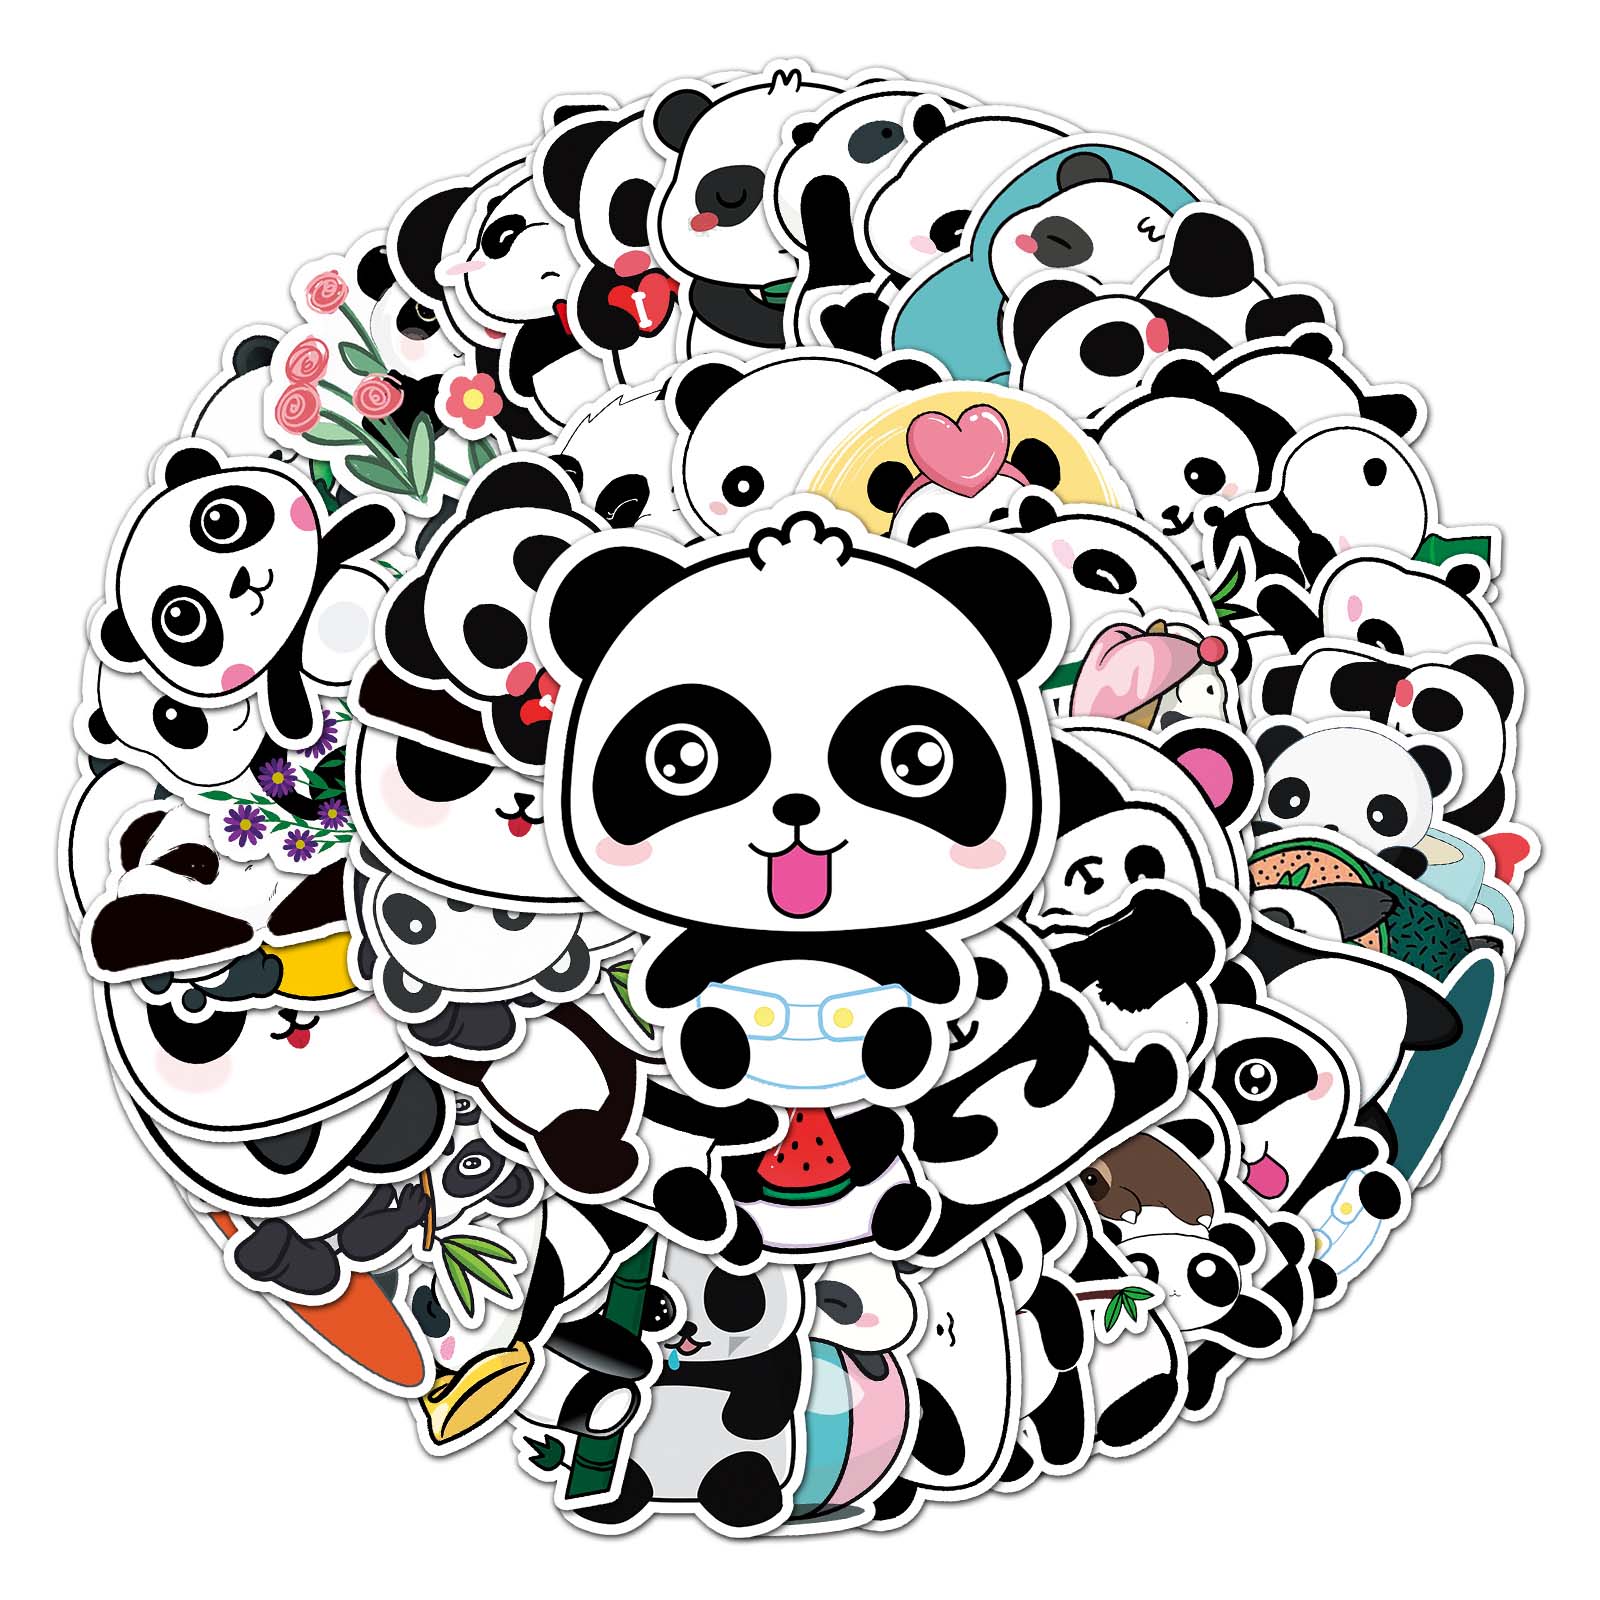 50pcs cartoon panda creative graffiti waterproof sticker PVC diary skateboard diy car decoration